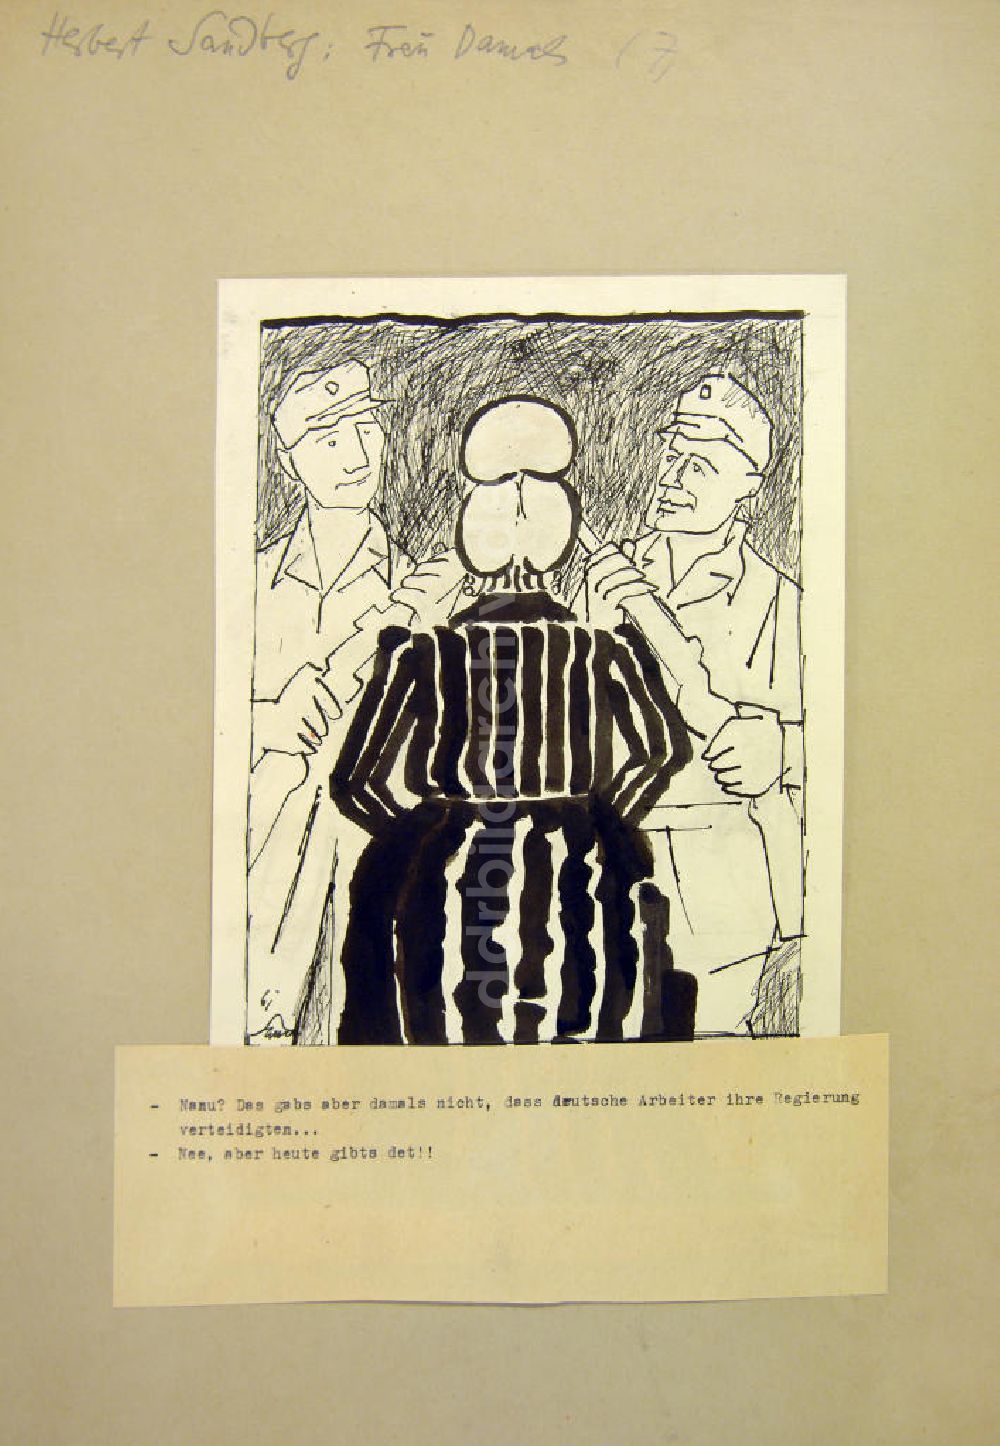 DDR-Bildarchiv: Berlin - Zeichnung von Herbert Sandberg Frau Damals (7.) aus dem Jahr 1961